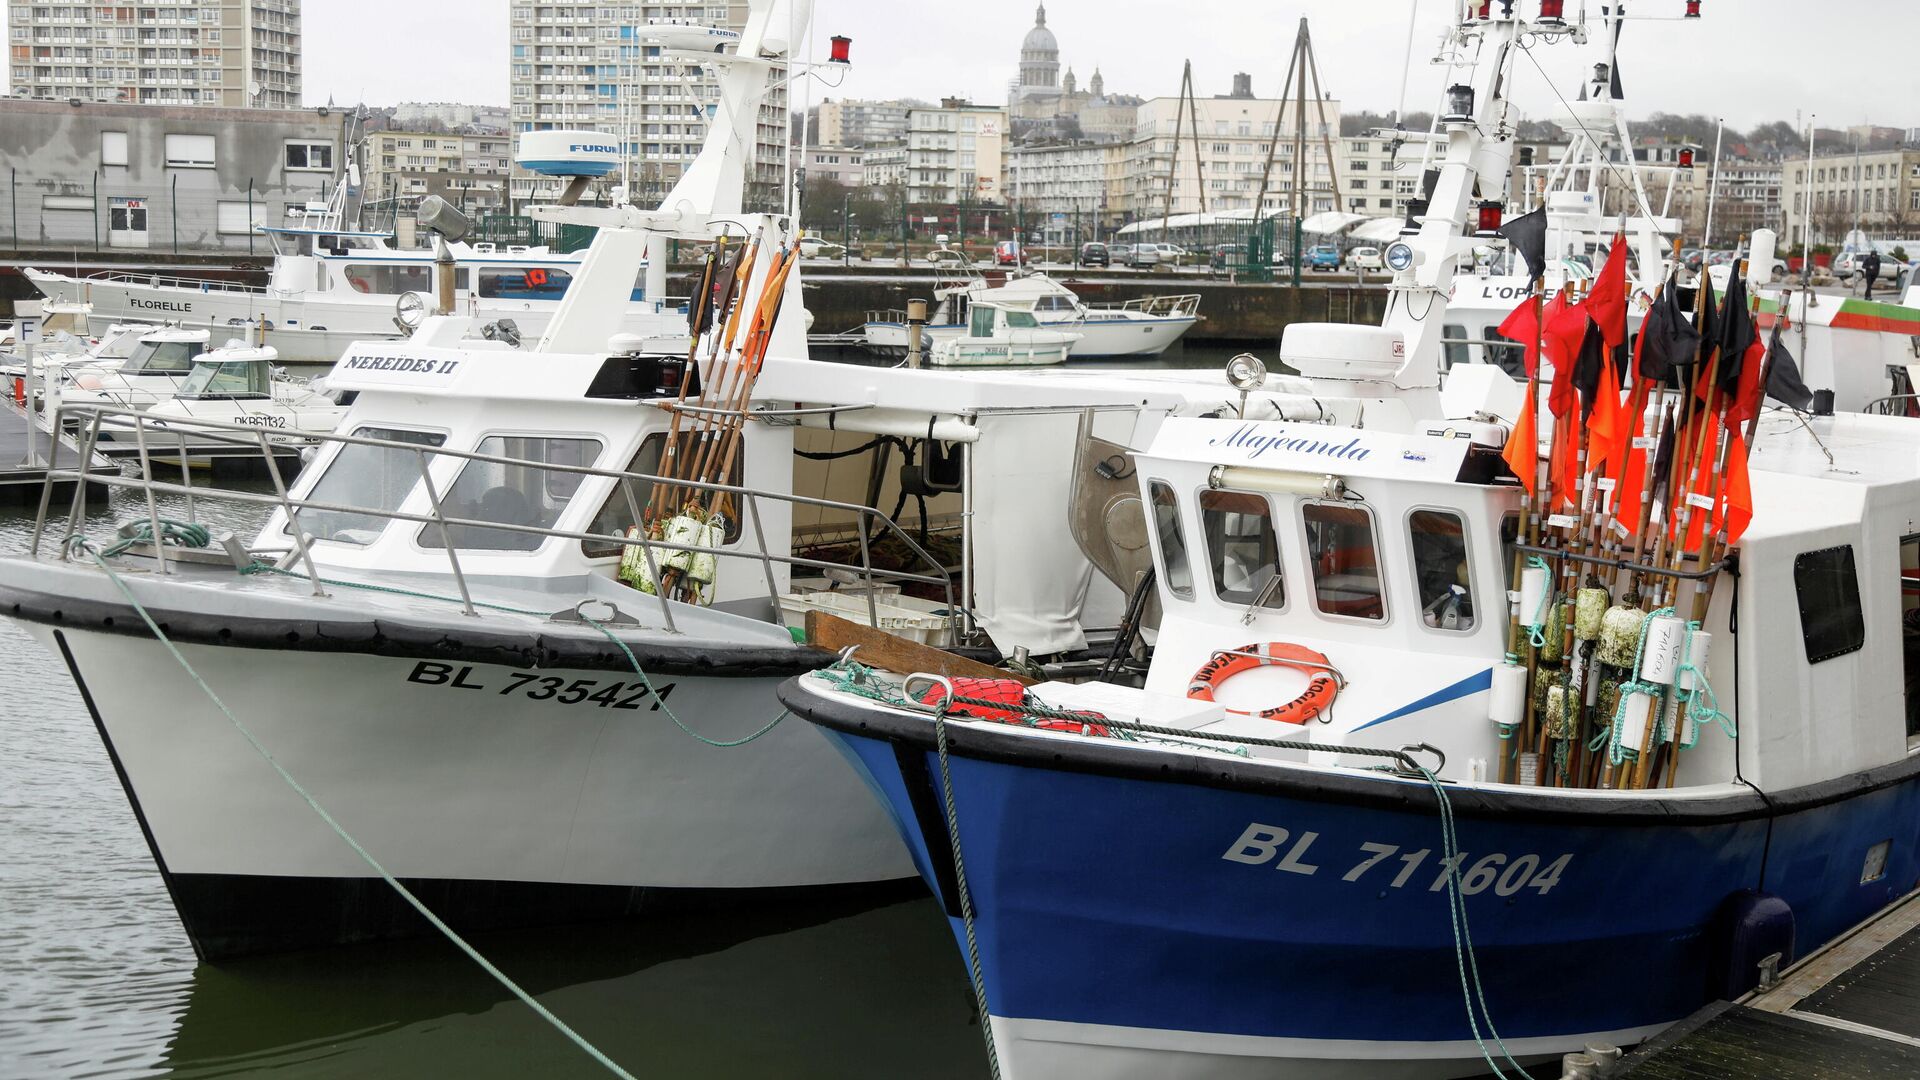 Los barcos de pesca atracados en Boulogne-sur-Mer después de que el Reino Unido y la Unión Europea negociaran un acuerdo comercial de última hora posterior al Brexit, en el norte de Francia, el 28 de diciembre de 2020 - Sputnik Mundo, 1920, 11.12.2021